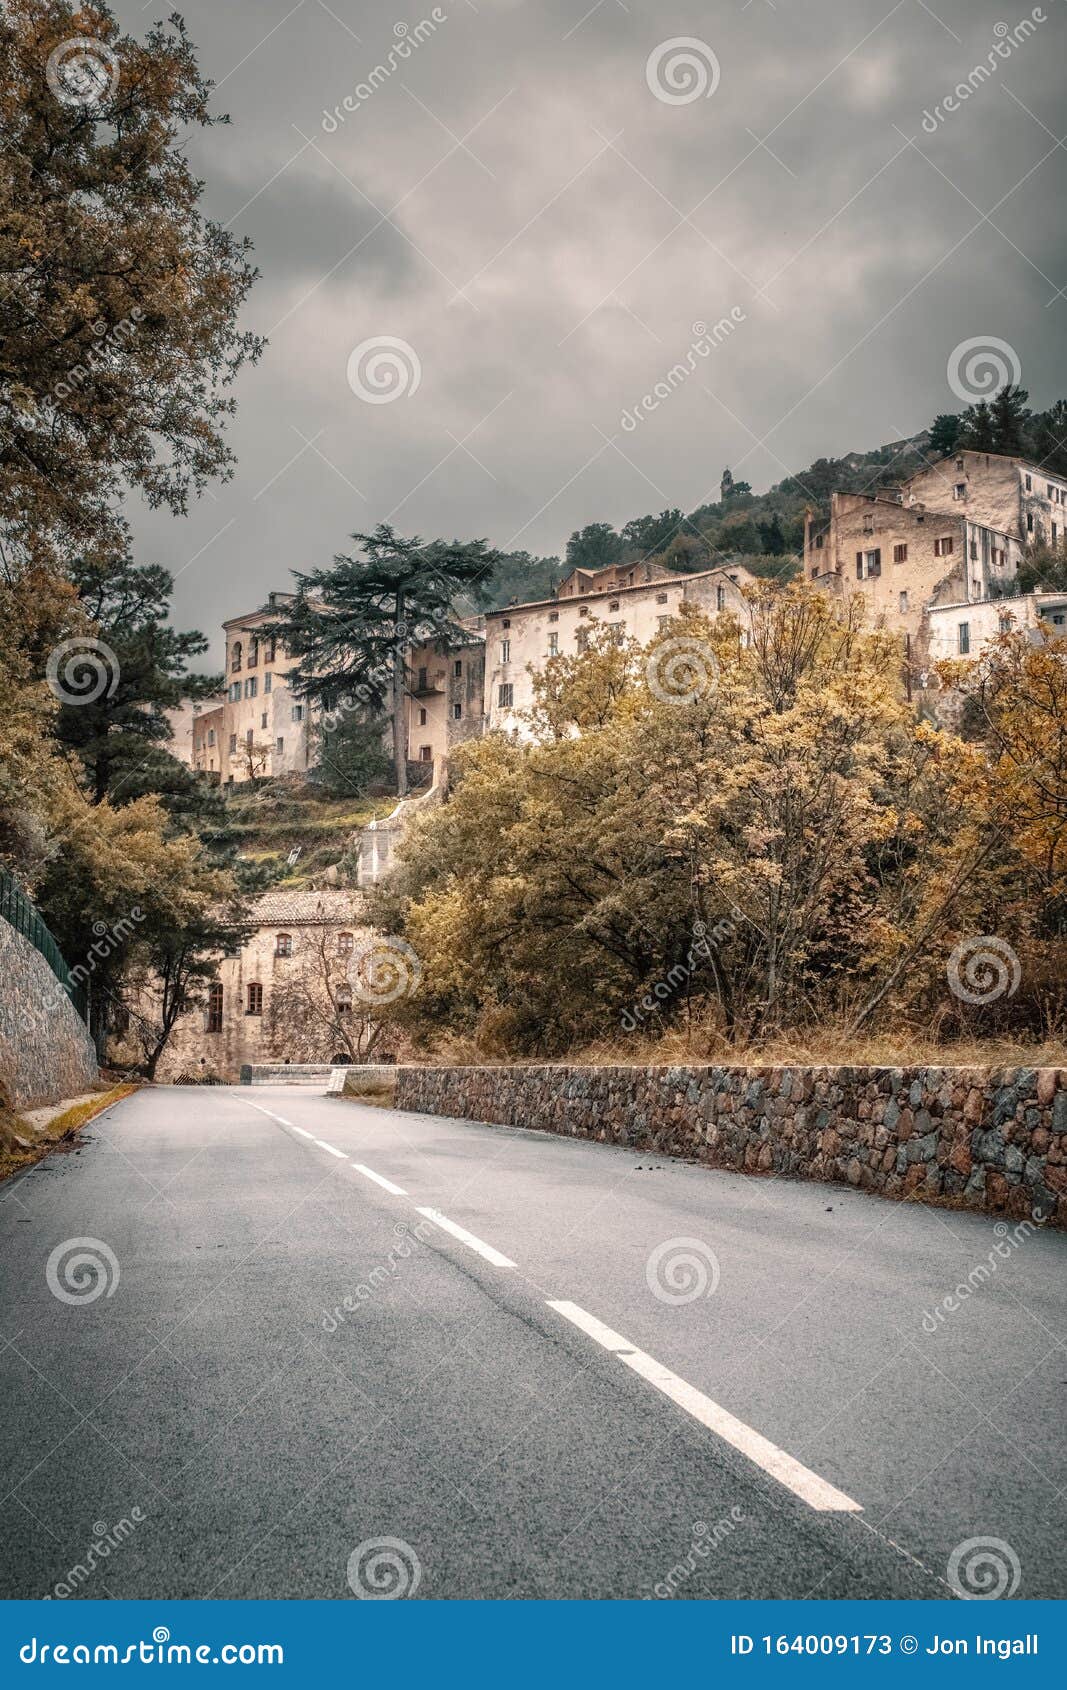 village of ville di paraso in corsica